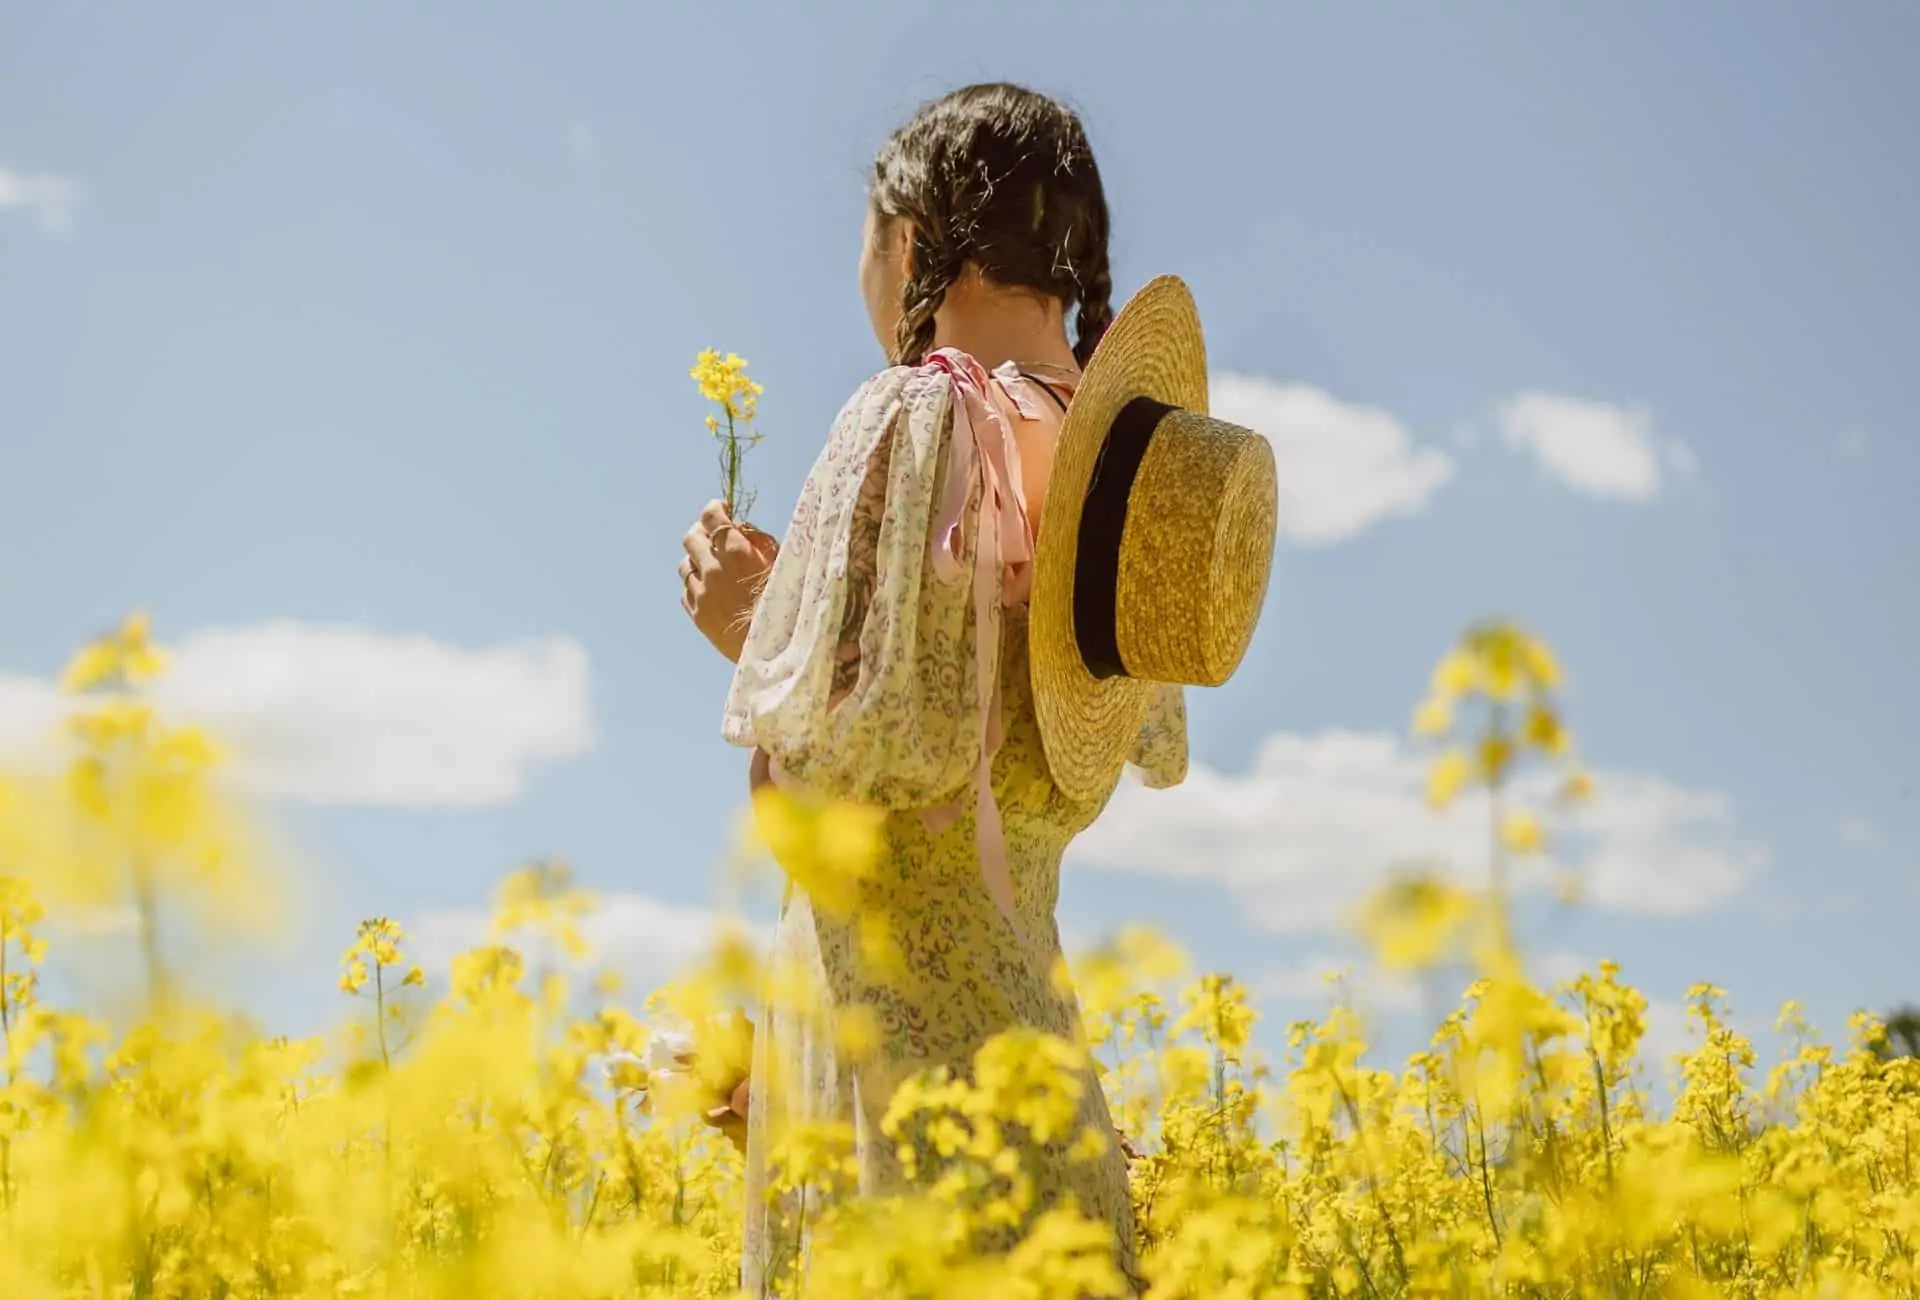 Woman wearing a cottagecore dress in yellow flower field.